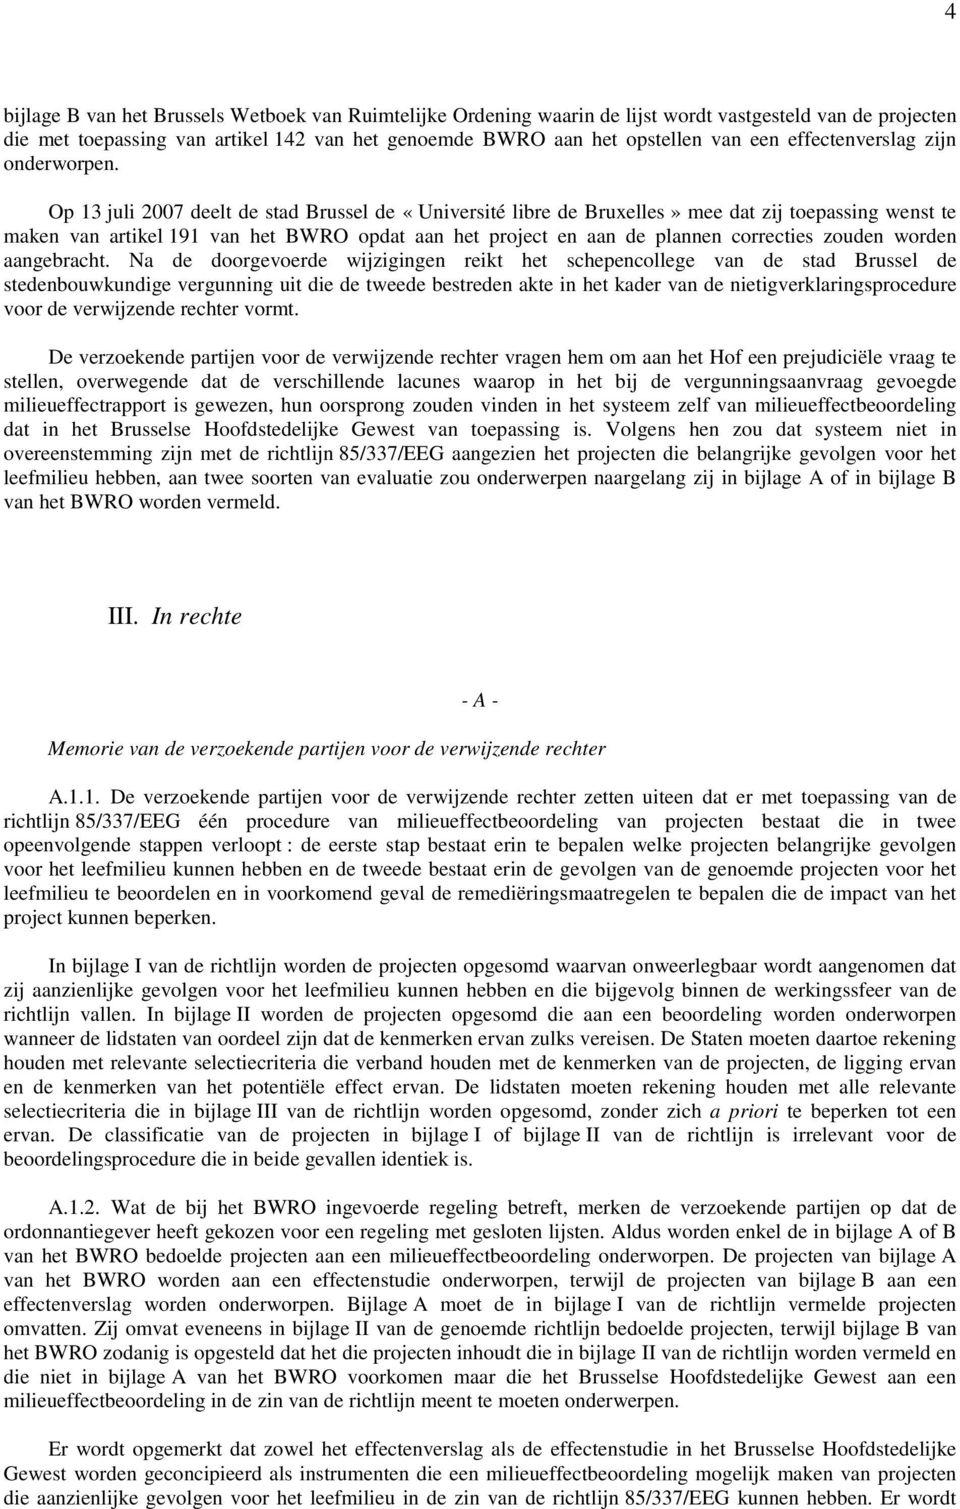 Op 13 juli 2007 deelt de stad Brussel de «Université libre de Bruxelles» mee dat zij toepassing wenst te maken van artikel 191 van het BWRO opdat aan het project en aan de plannen correcties zouden